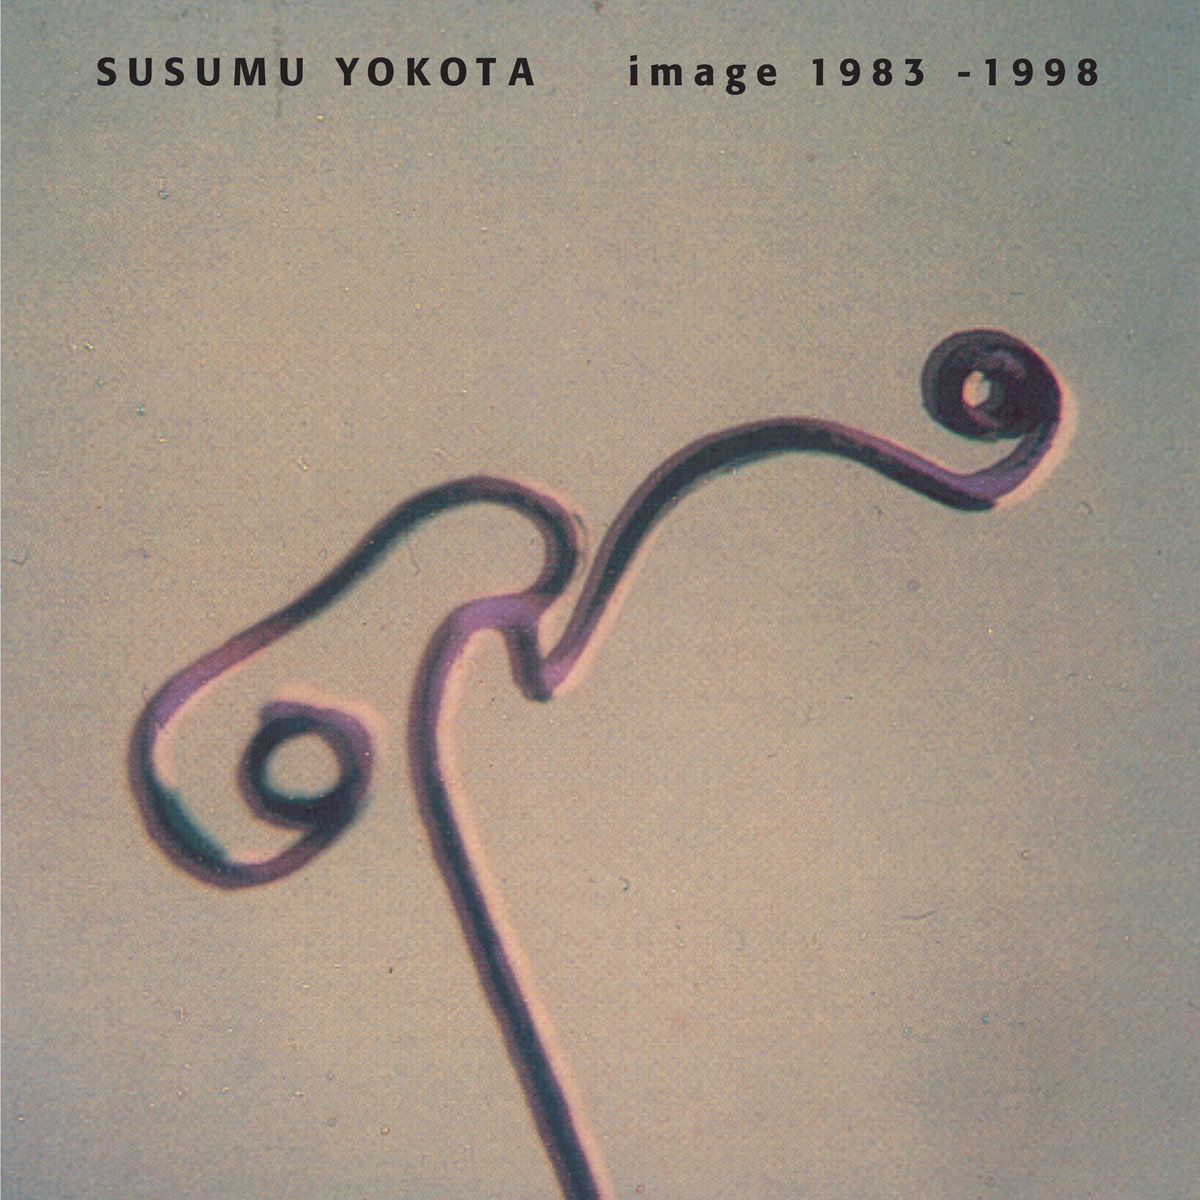 Susumu Yokota: 'Image 1983 - 1998'